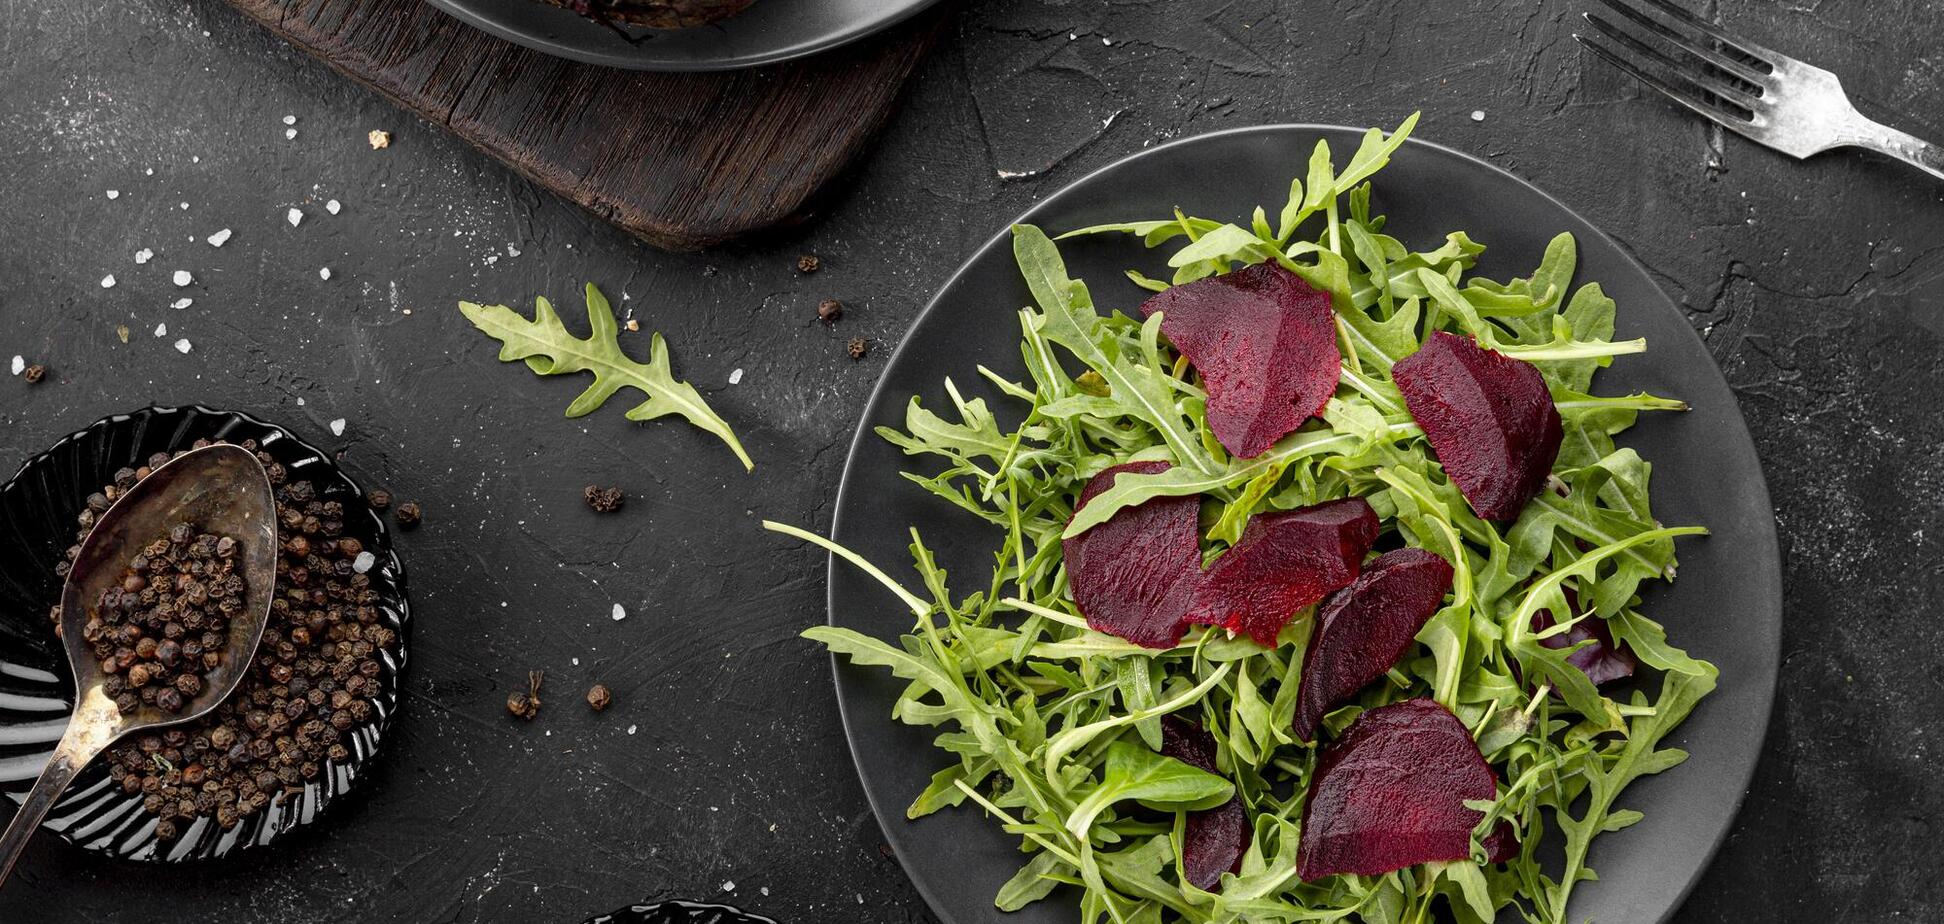 Салат из свеклы с фетой: что добавить и чем заправить, чтобы был вкусный